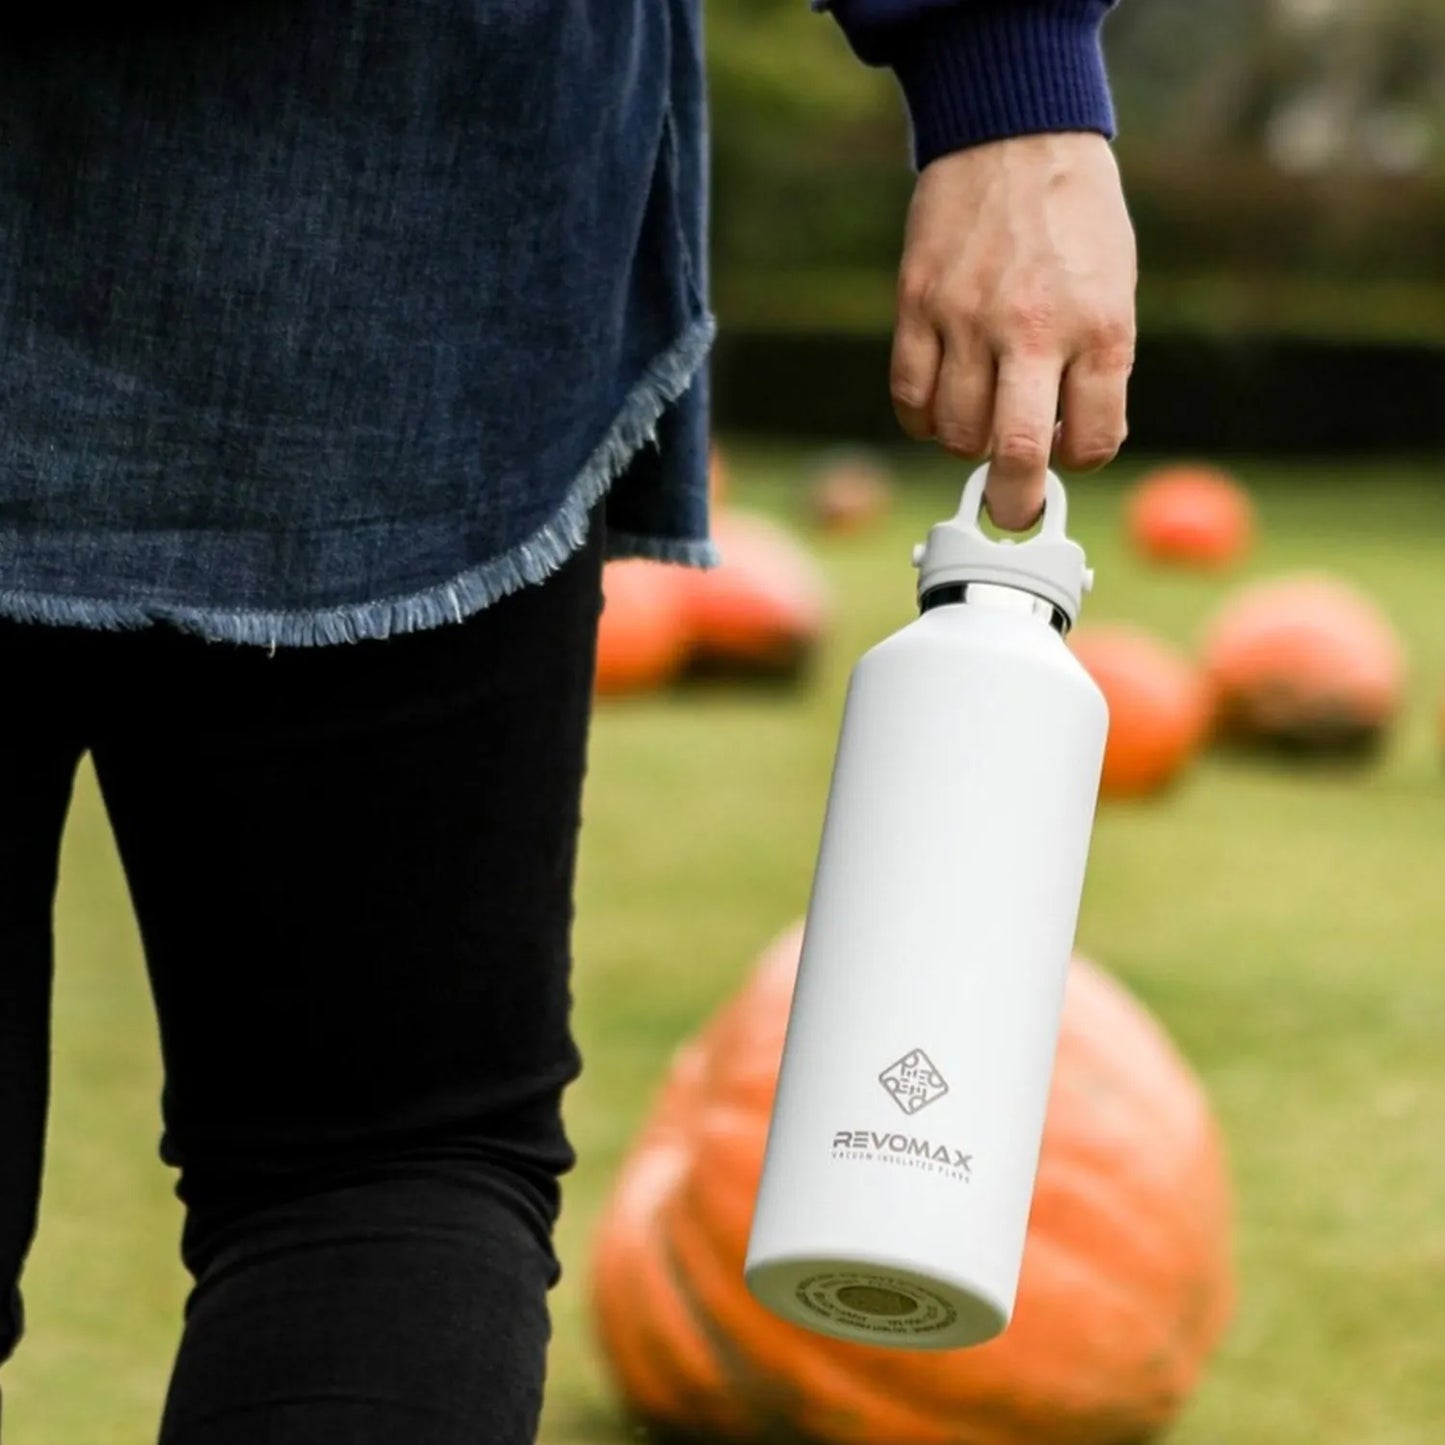 Eine Person haelt eine weiße Edelstahl-Thermosflasche der Marke Revomax, im Hintergrund sind Kuerbisse auf einem Rasen zu sehen.